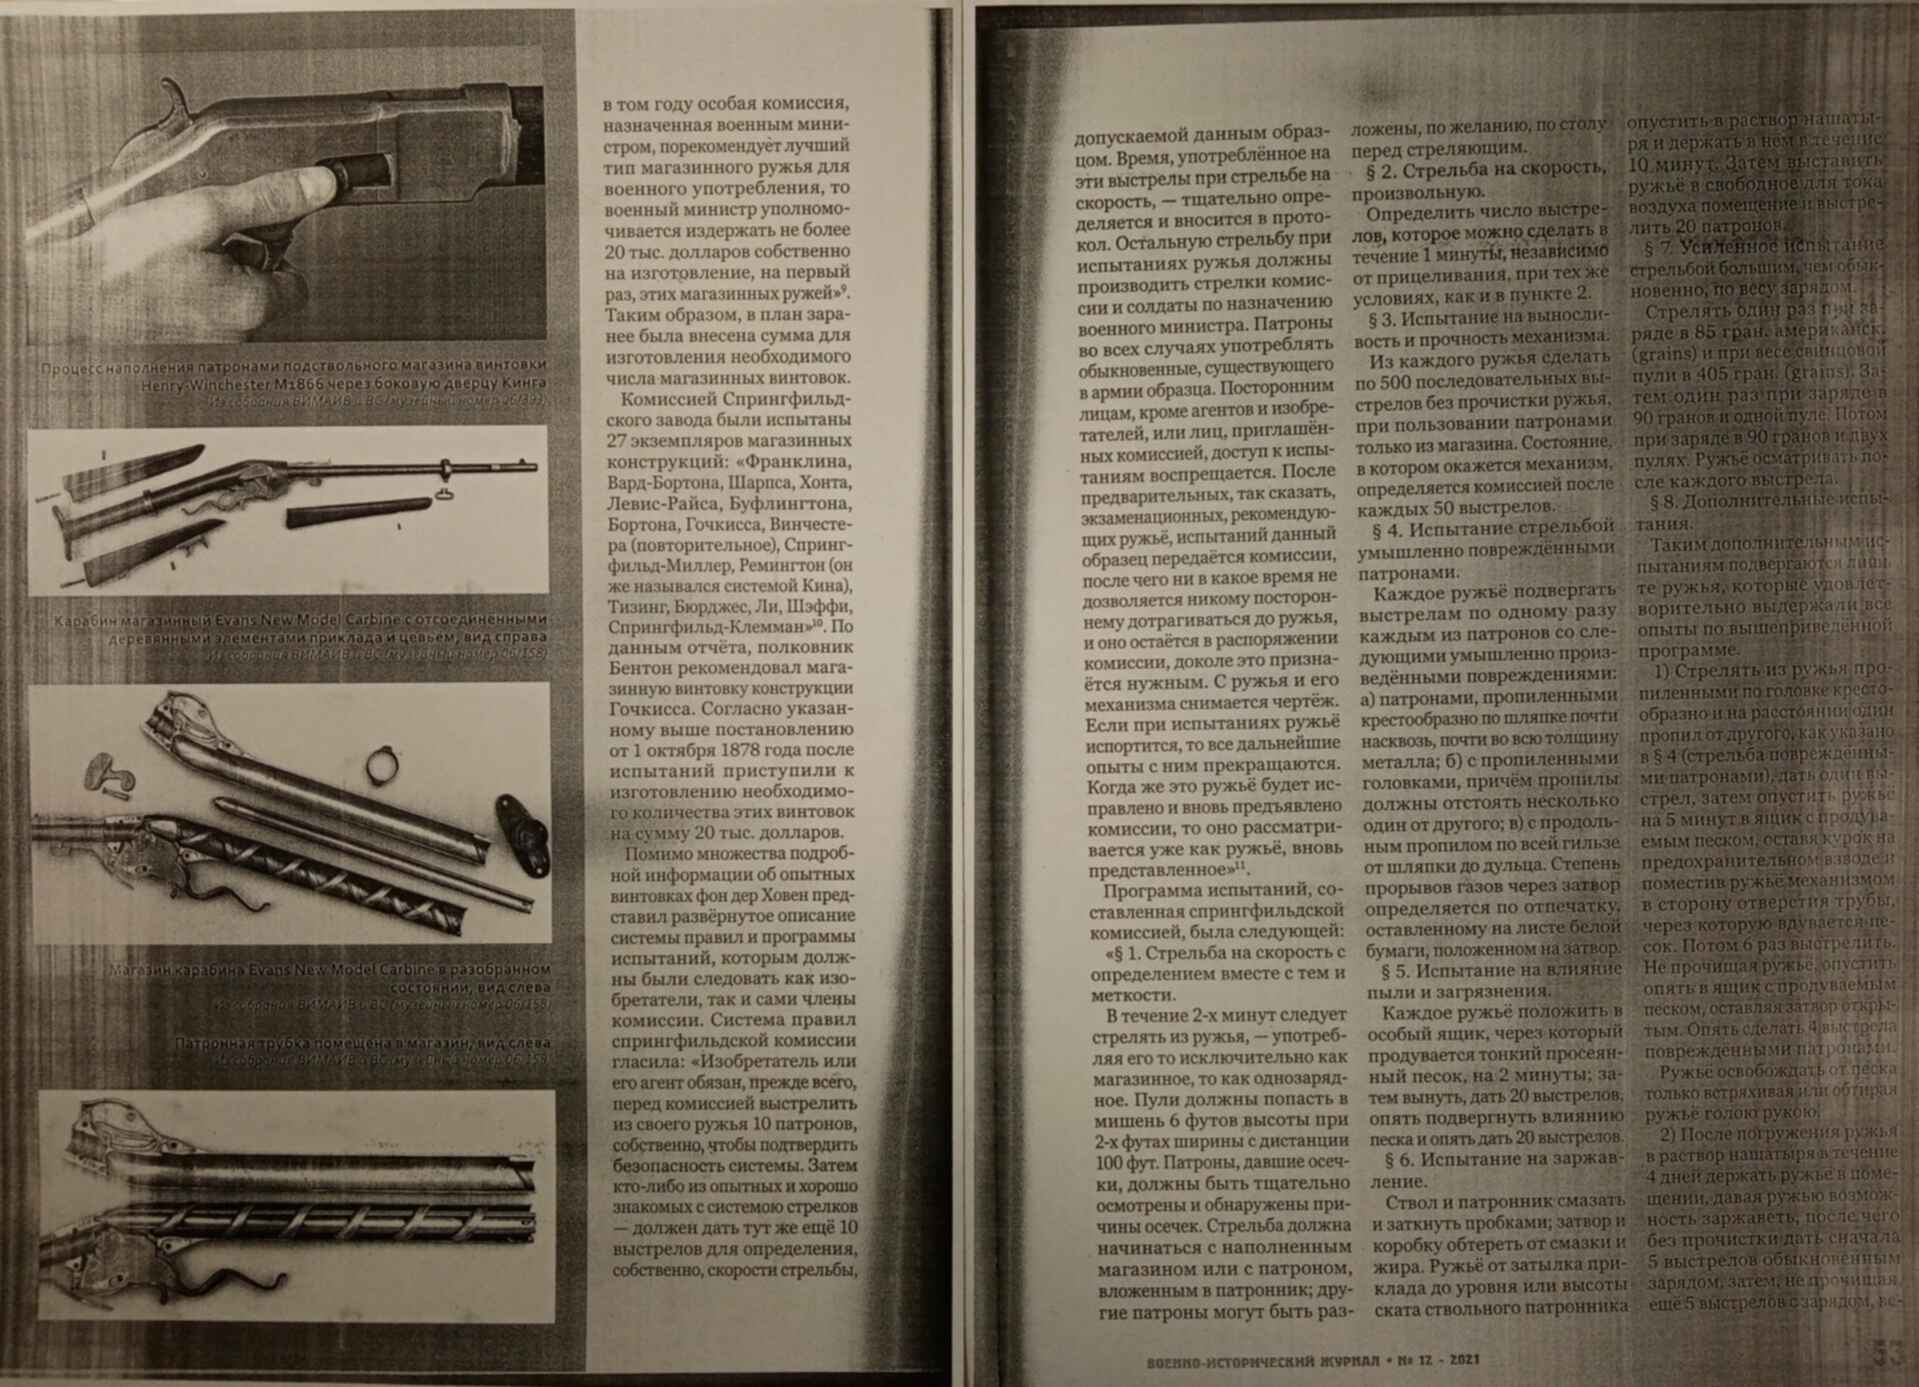 Война история оружия телеграмм фото 70